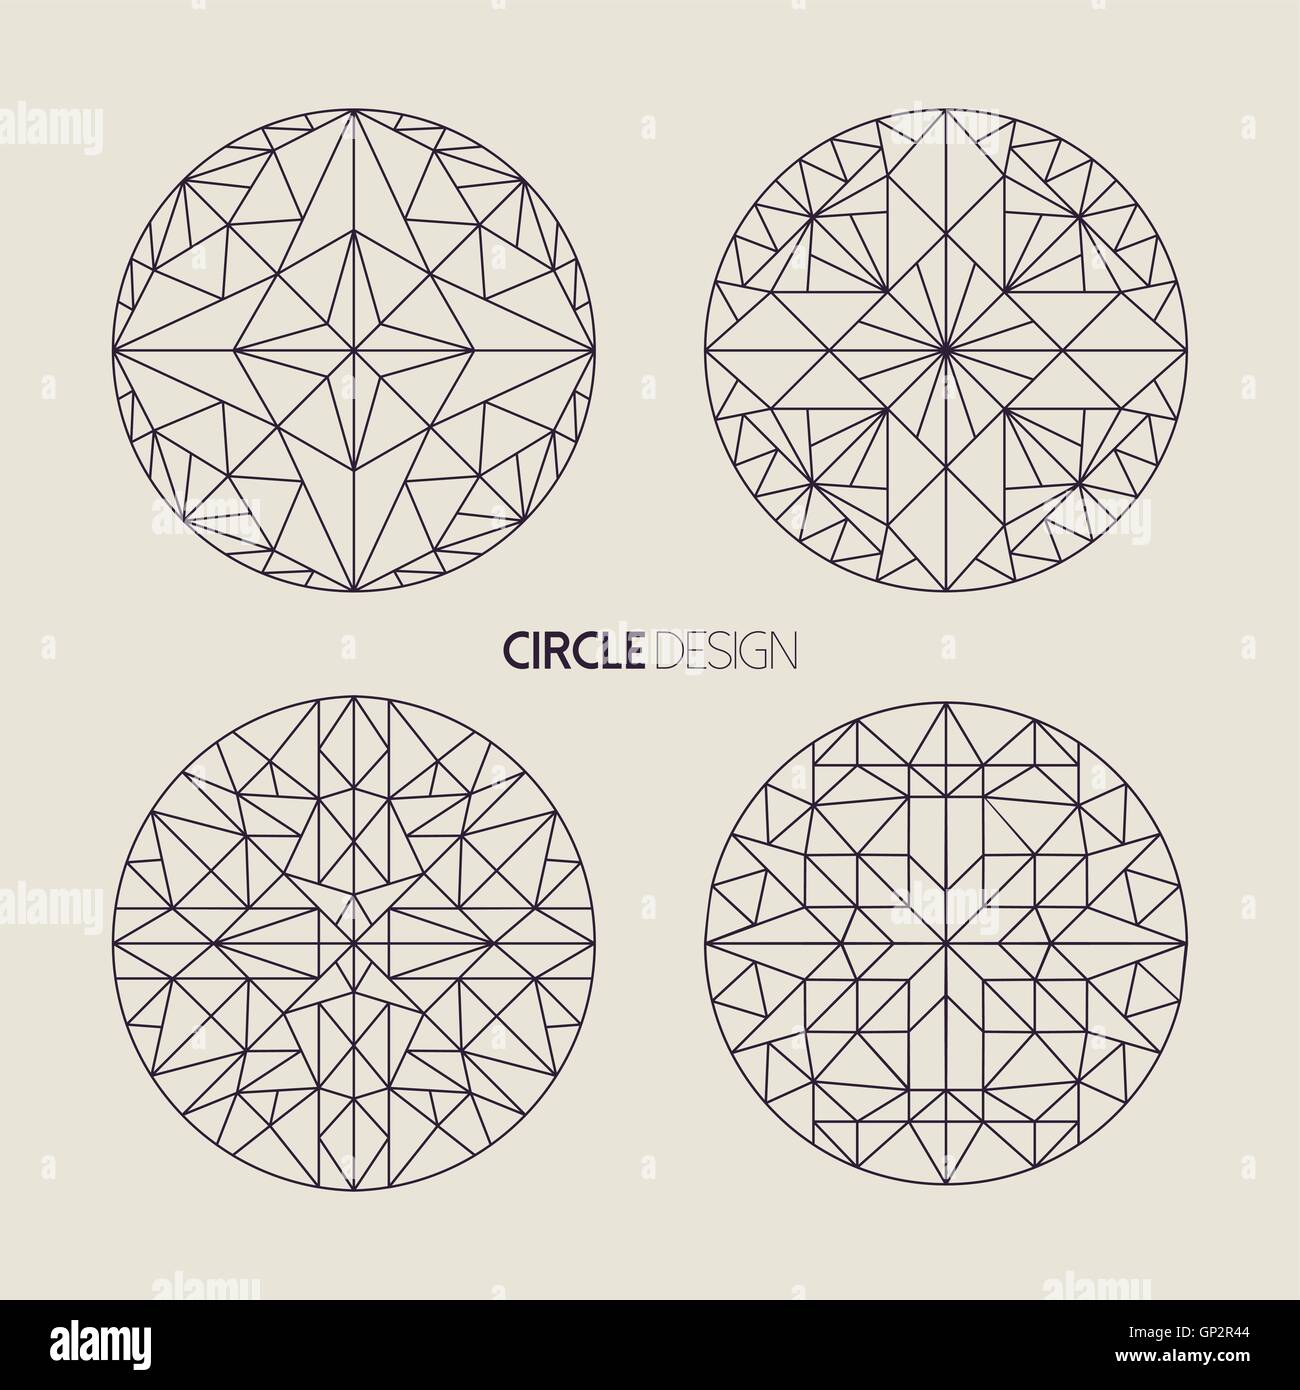 Forme du cercle jeu de conception géométrique d'ornement de style art mandalas en ligne avec les éléments de la géométrie sacrée. Vecteur EPS10. Illustration de Vecteur